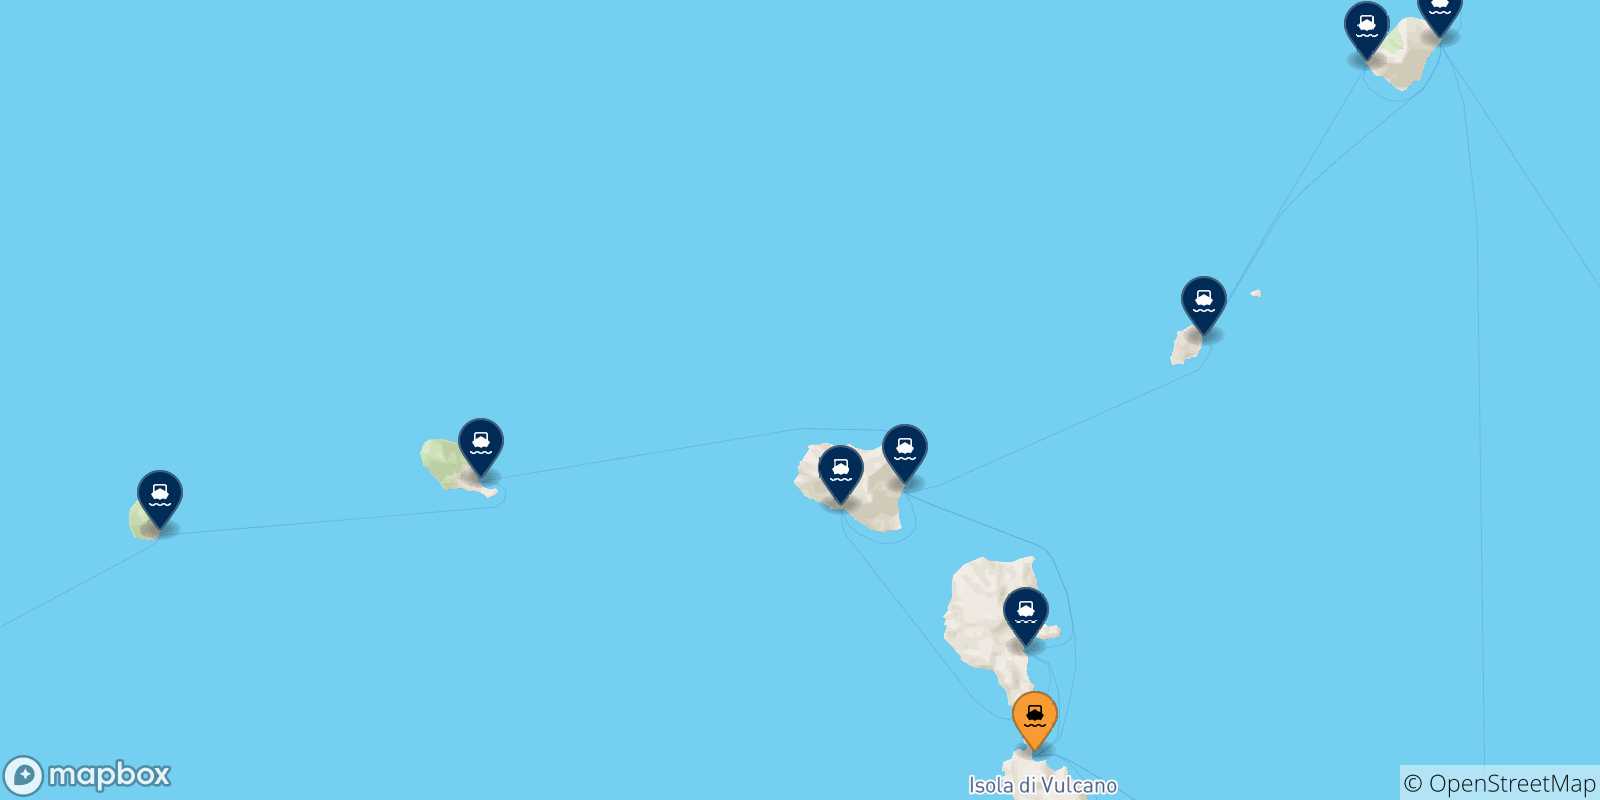 Mappa delle possibili rotte tra Vulcano e le Isole Eolie